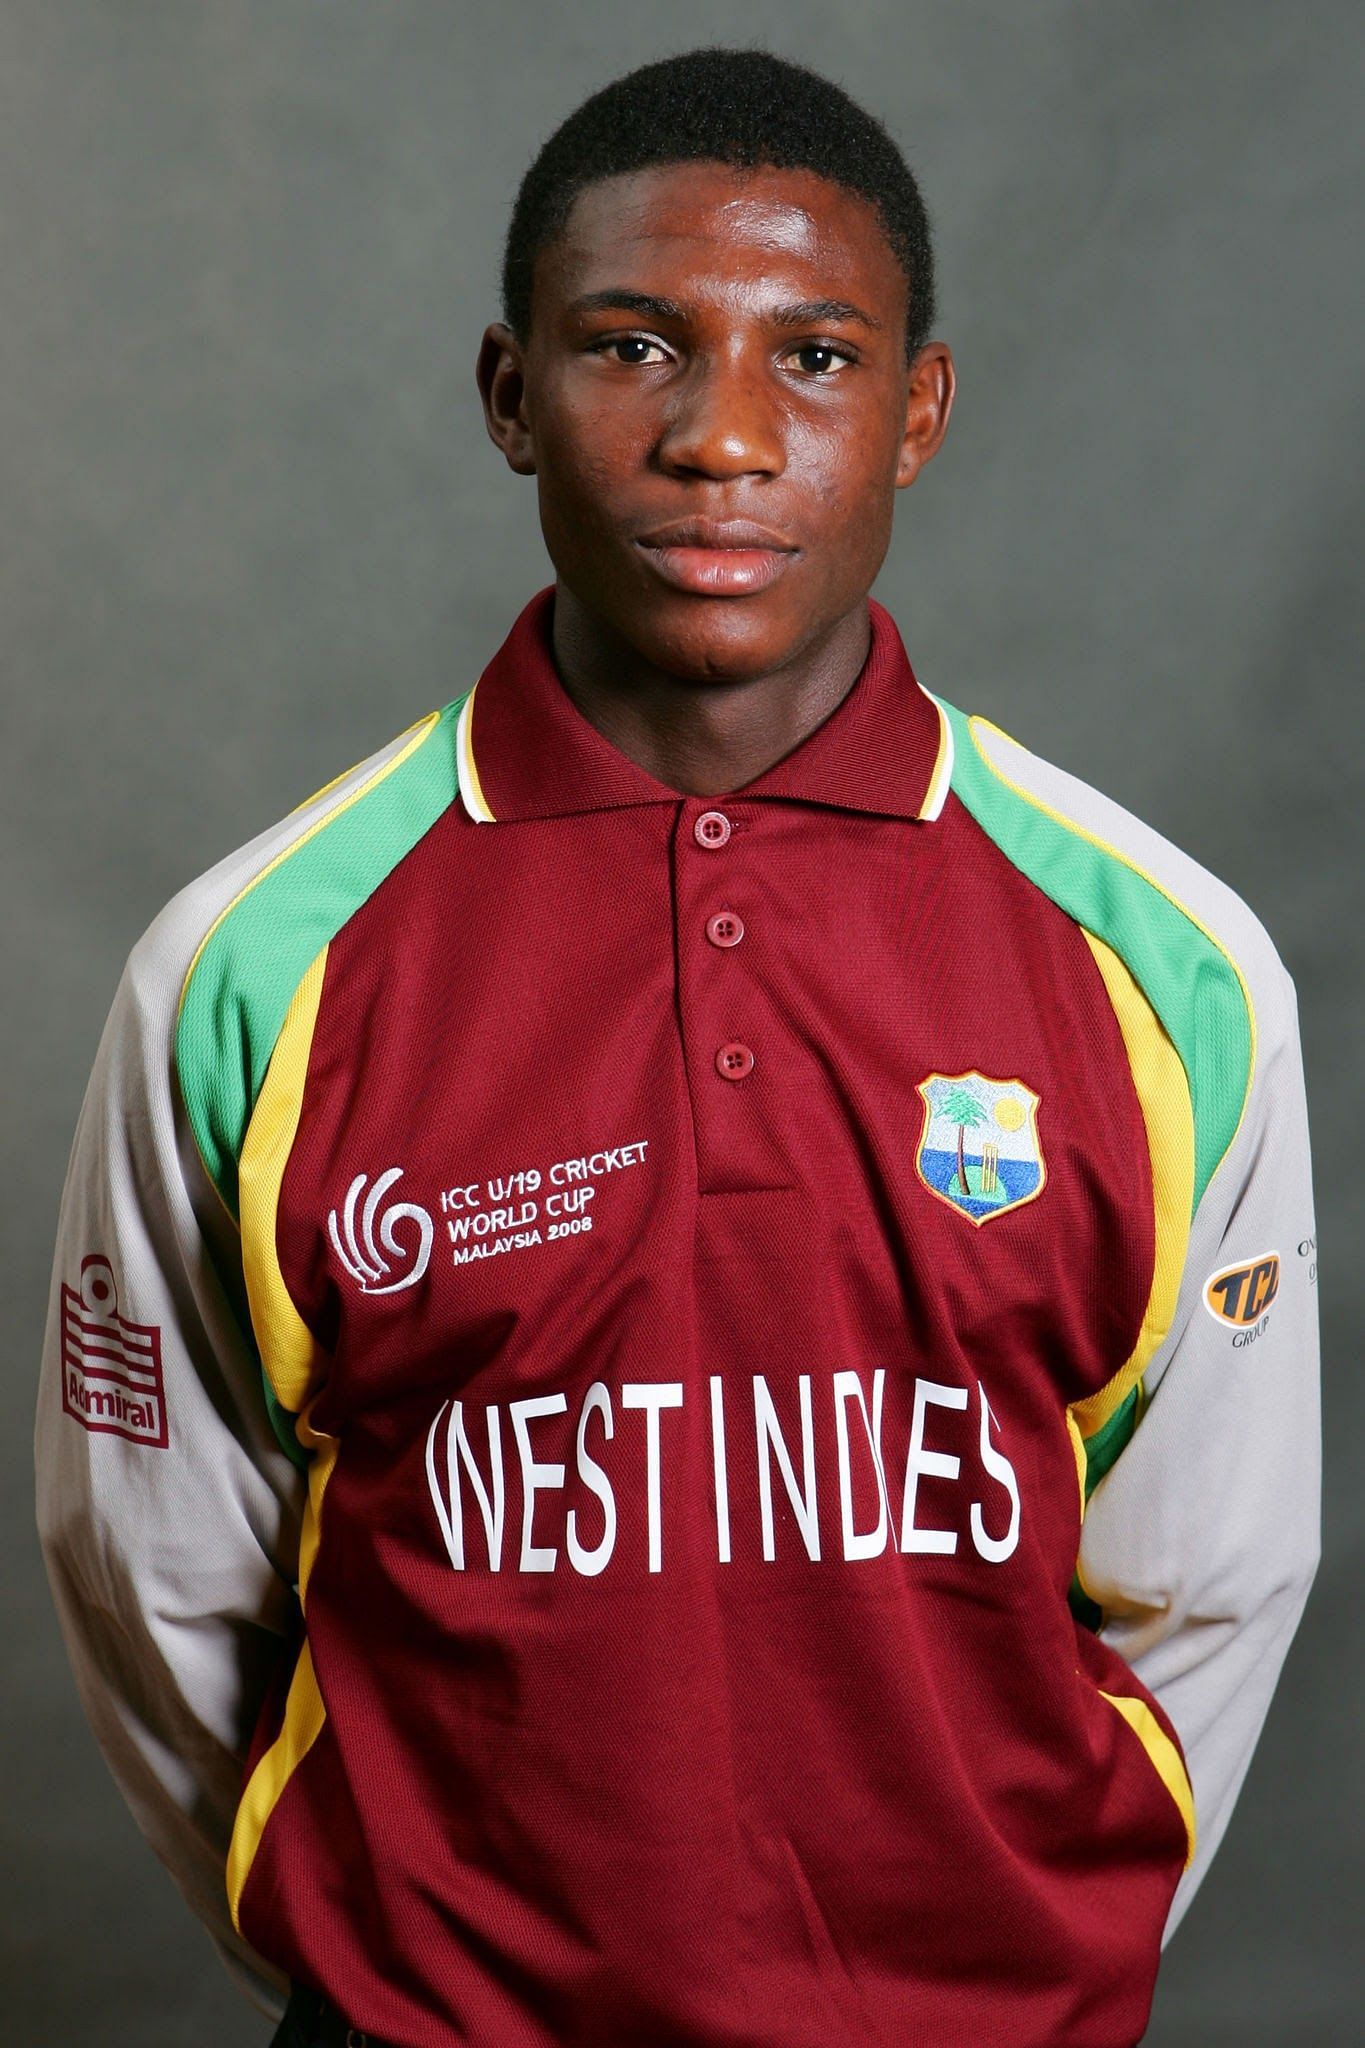 Devon Thomas Cricket West Indies